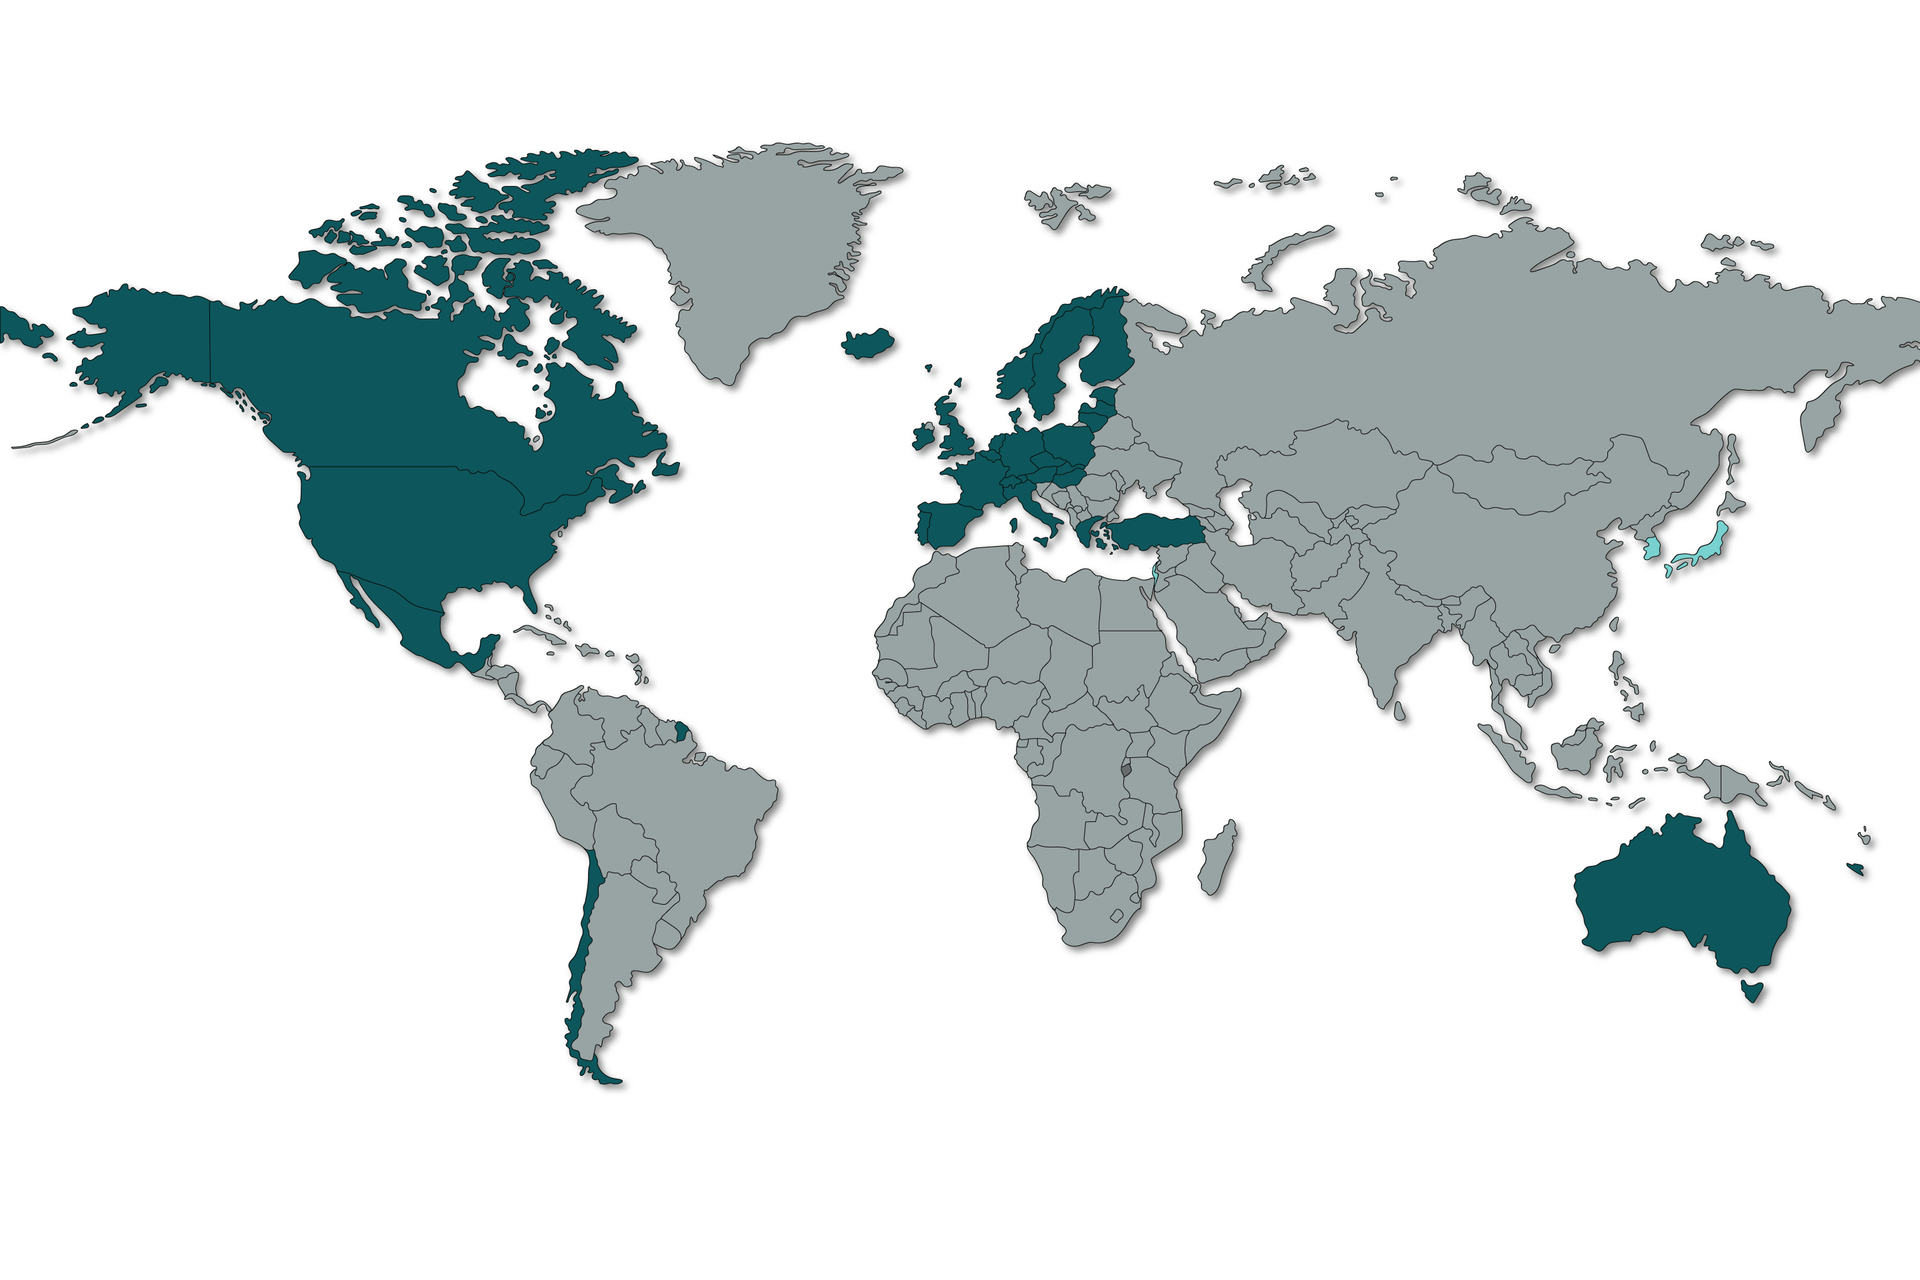 Na mapie zaznaczono Kanadę, USA, Chile, większość krajów europejskich z Polską włącznie, Australię.  